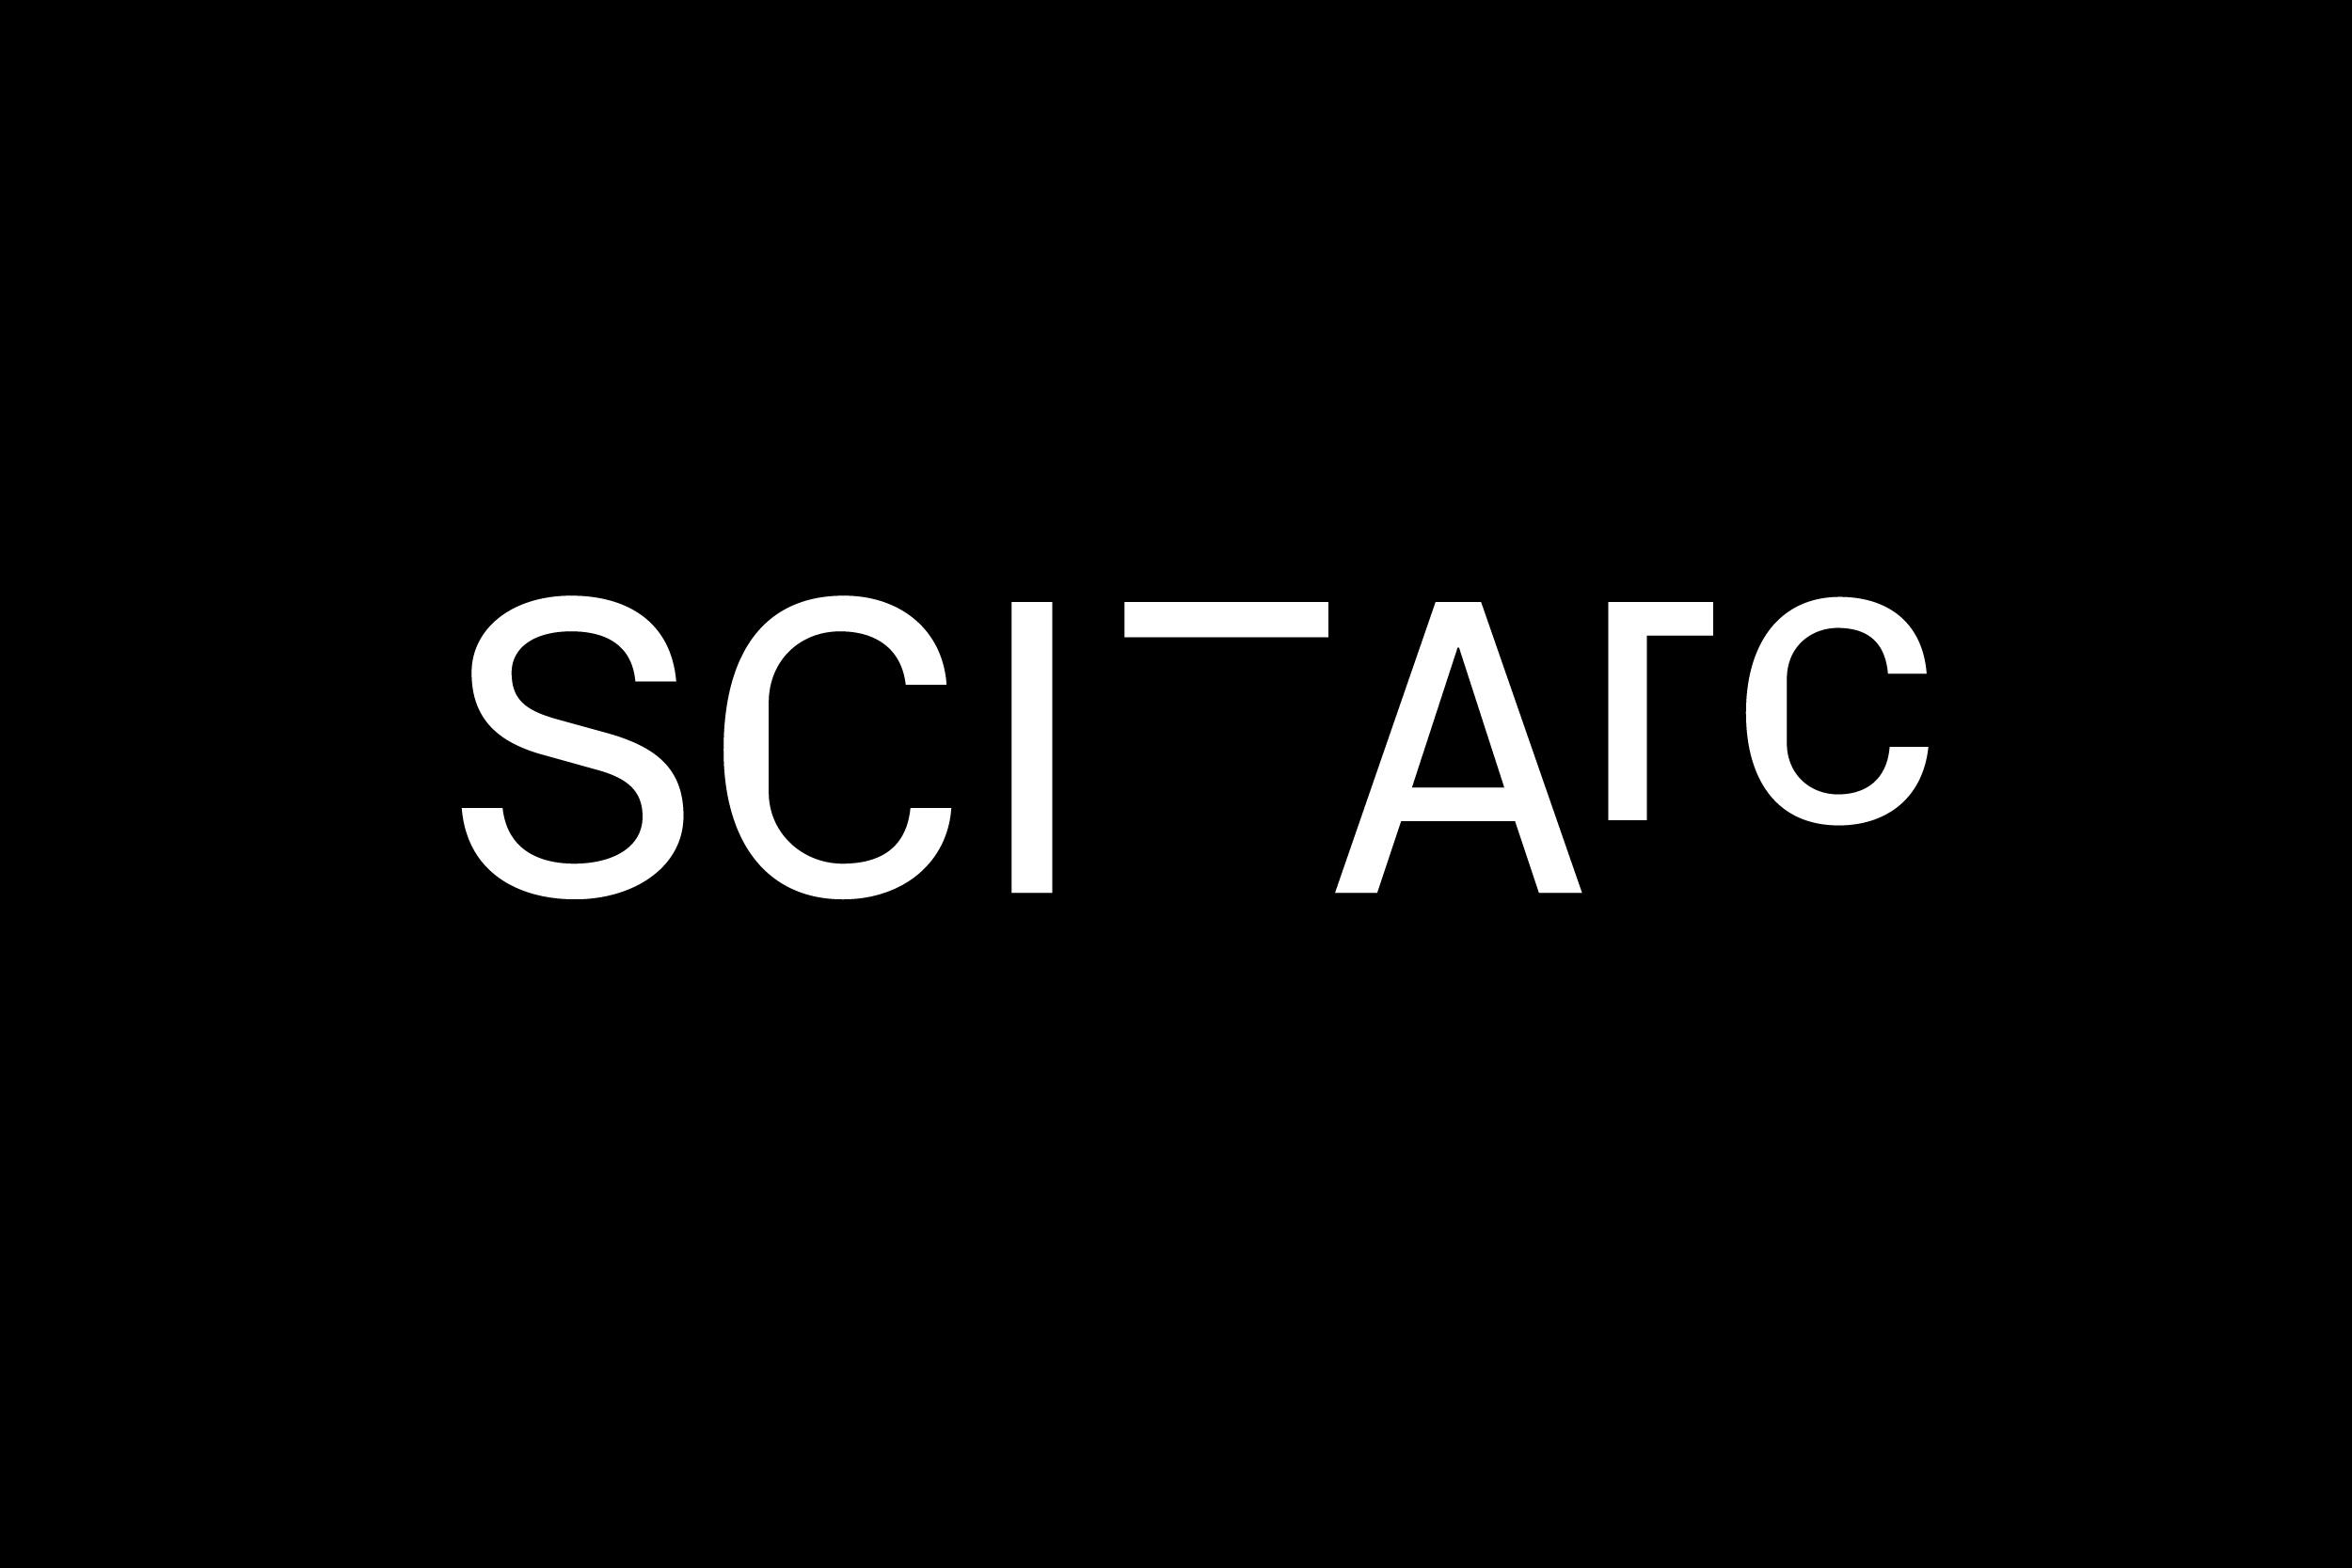 Sciarc logo white on black